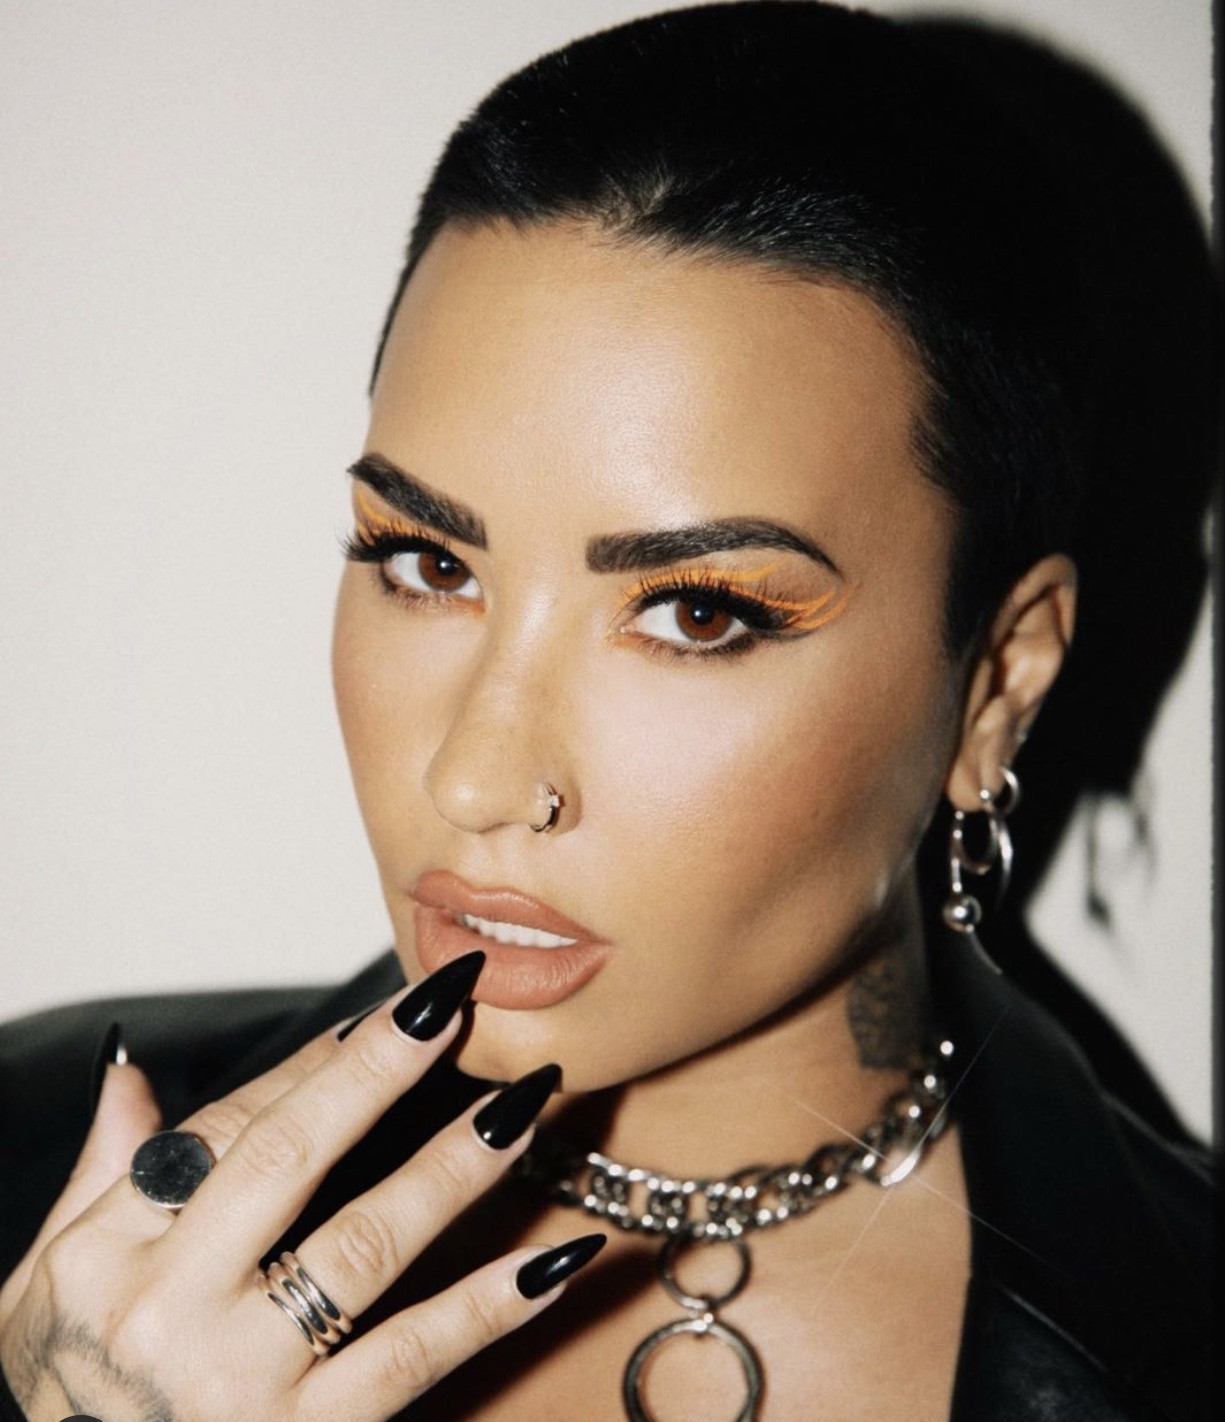 A cantora Demi Lovato resolveu desativar suas contas após haters sugerirem que ela voltasse a usar drogas — Foto: Reprodução/ Instagram